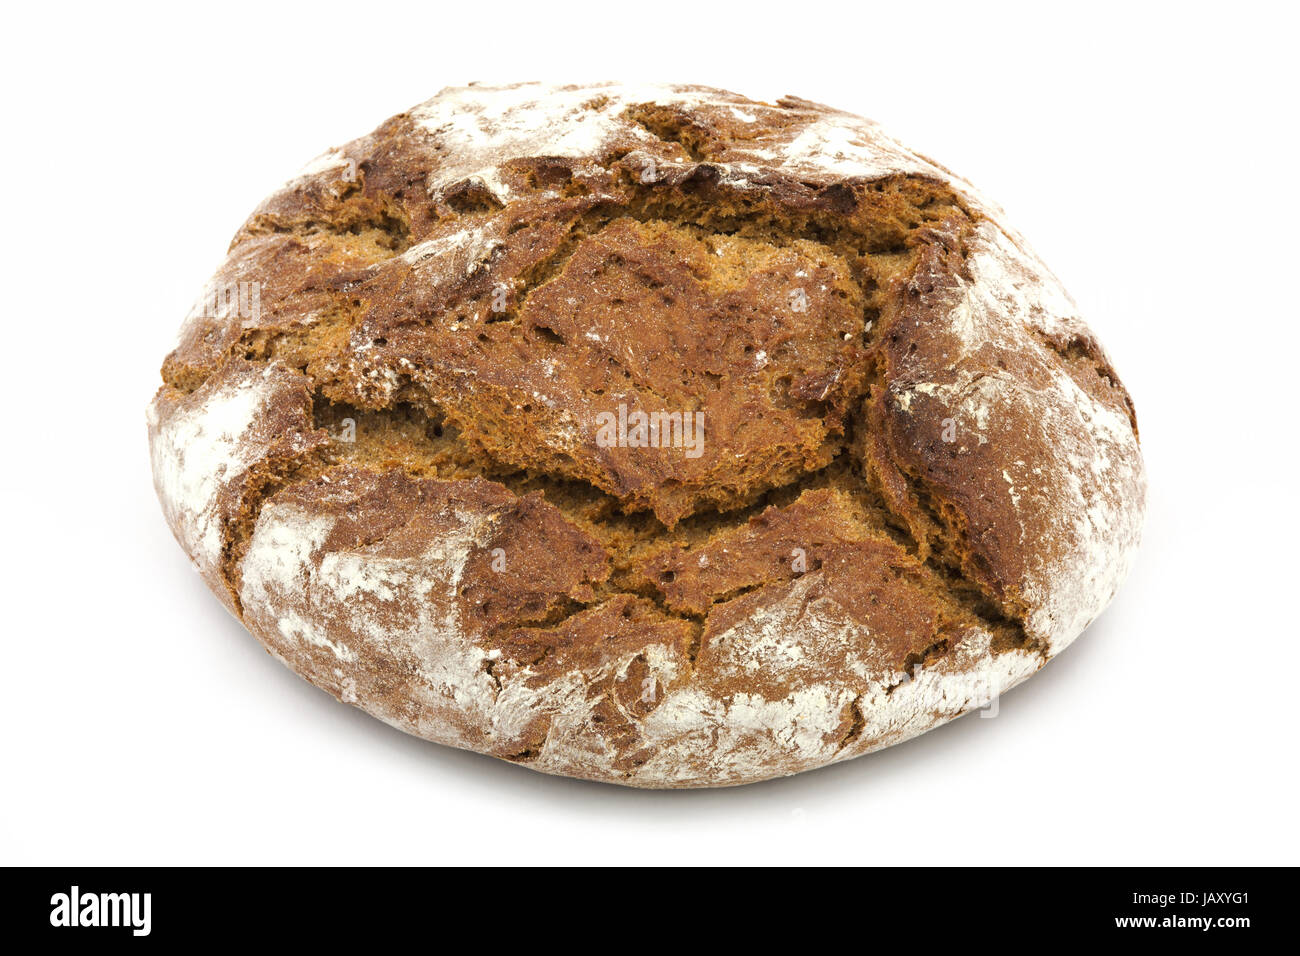 Brot, frischer knuspriger Brotlaib auf weissem Hintergrund Foto Stock